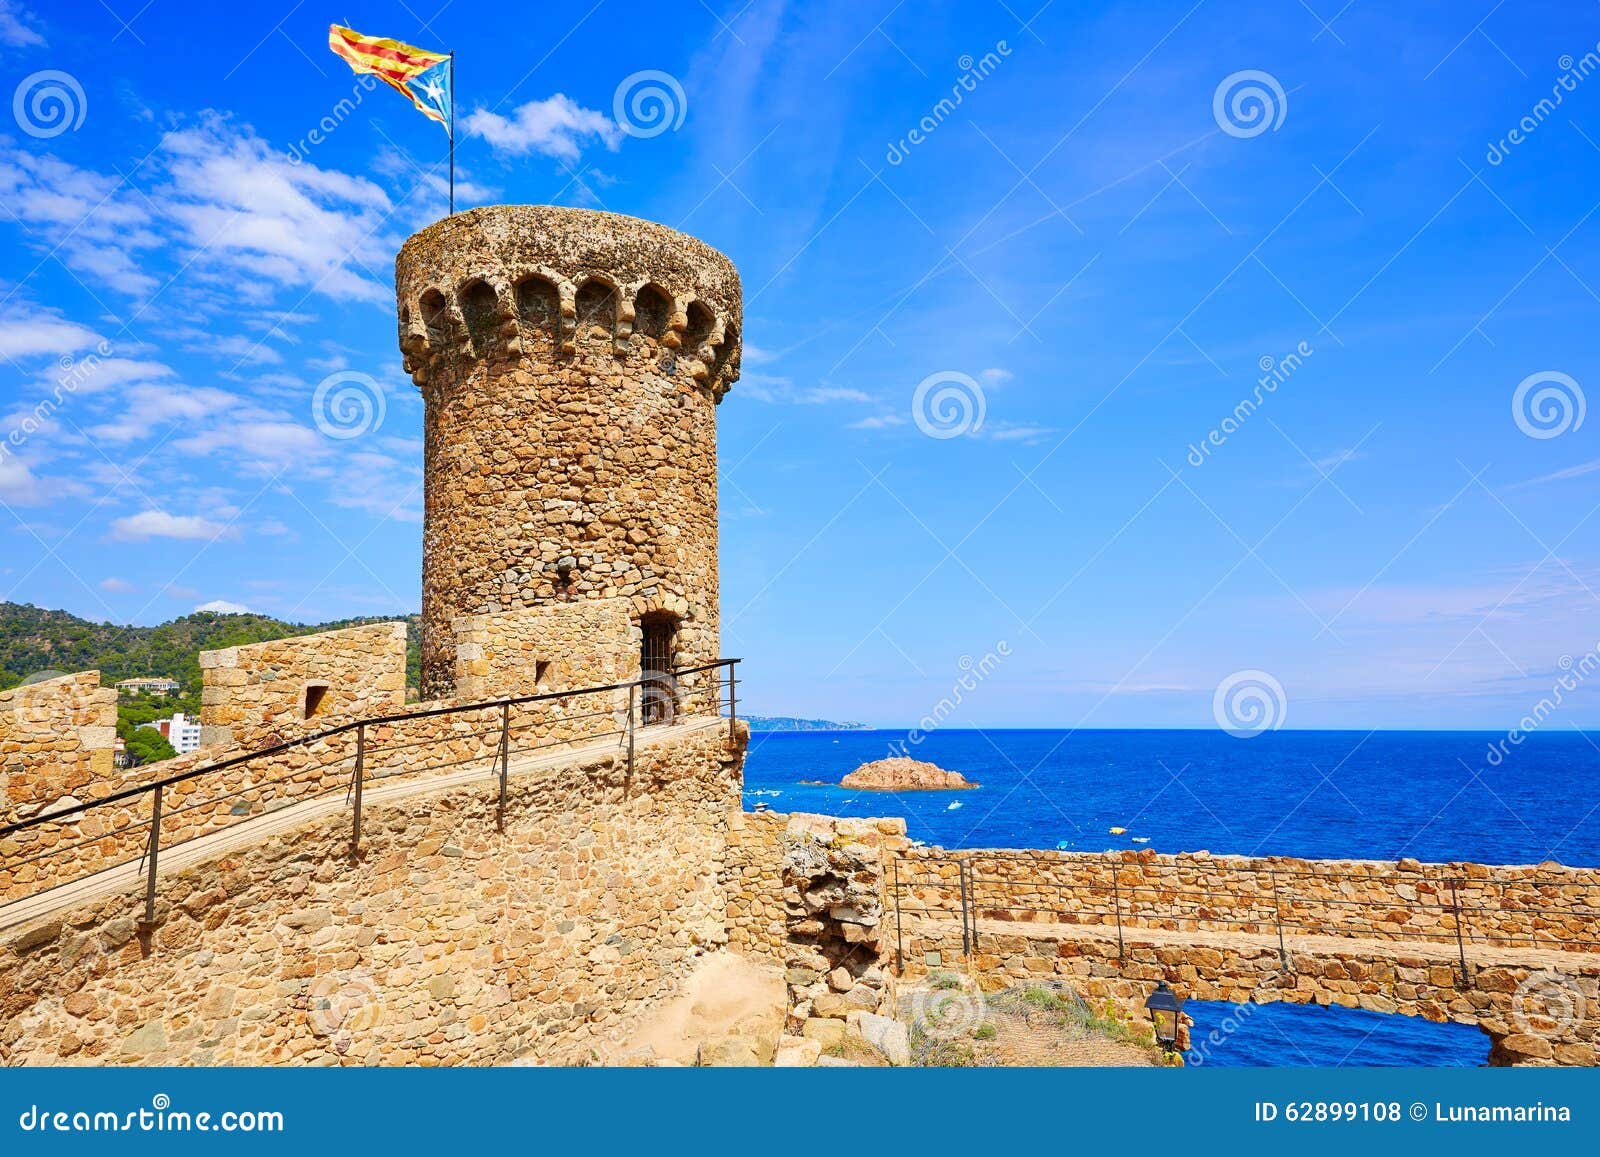 tossa de mar castle in costa brava of catalonia